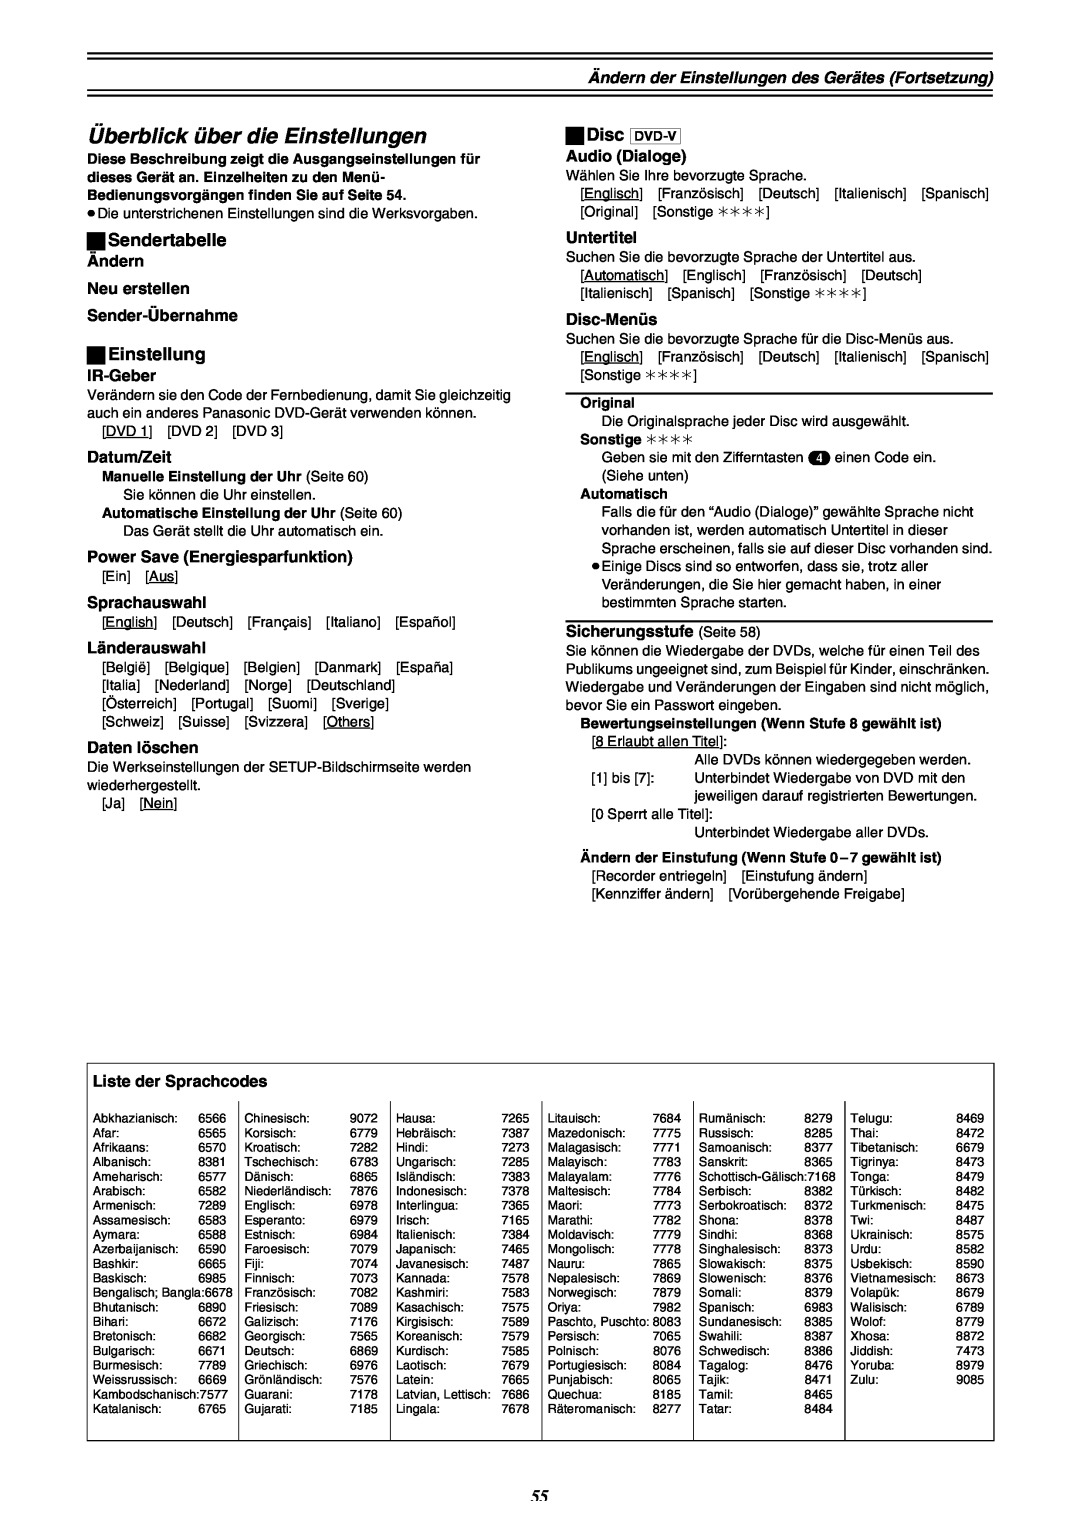 Panasonic DMR-E30 manual Überblick über die Einstellungen, ªSendertabelle, ªEinstellung 